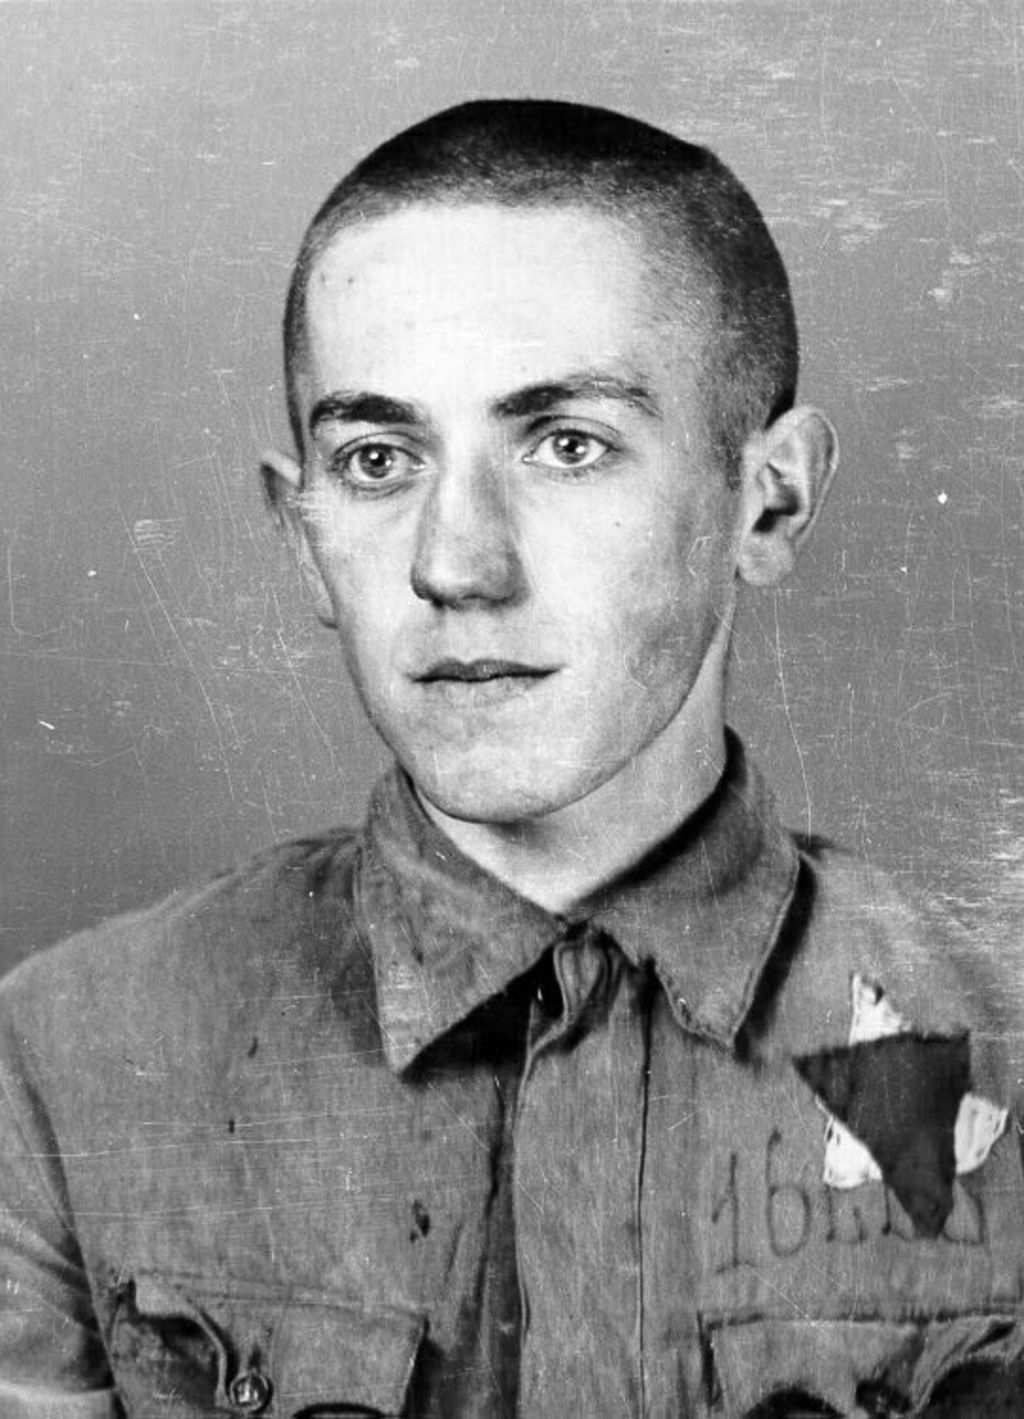 Exponat: Photo: Erfassungsphoto aus dem KZ Auschwitz, 1942